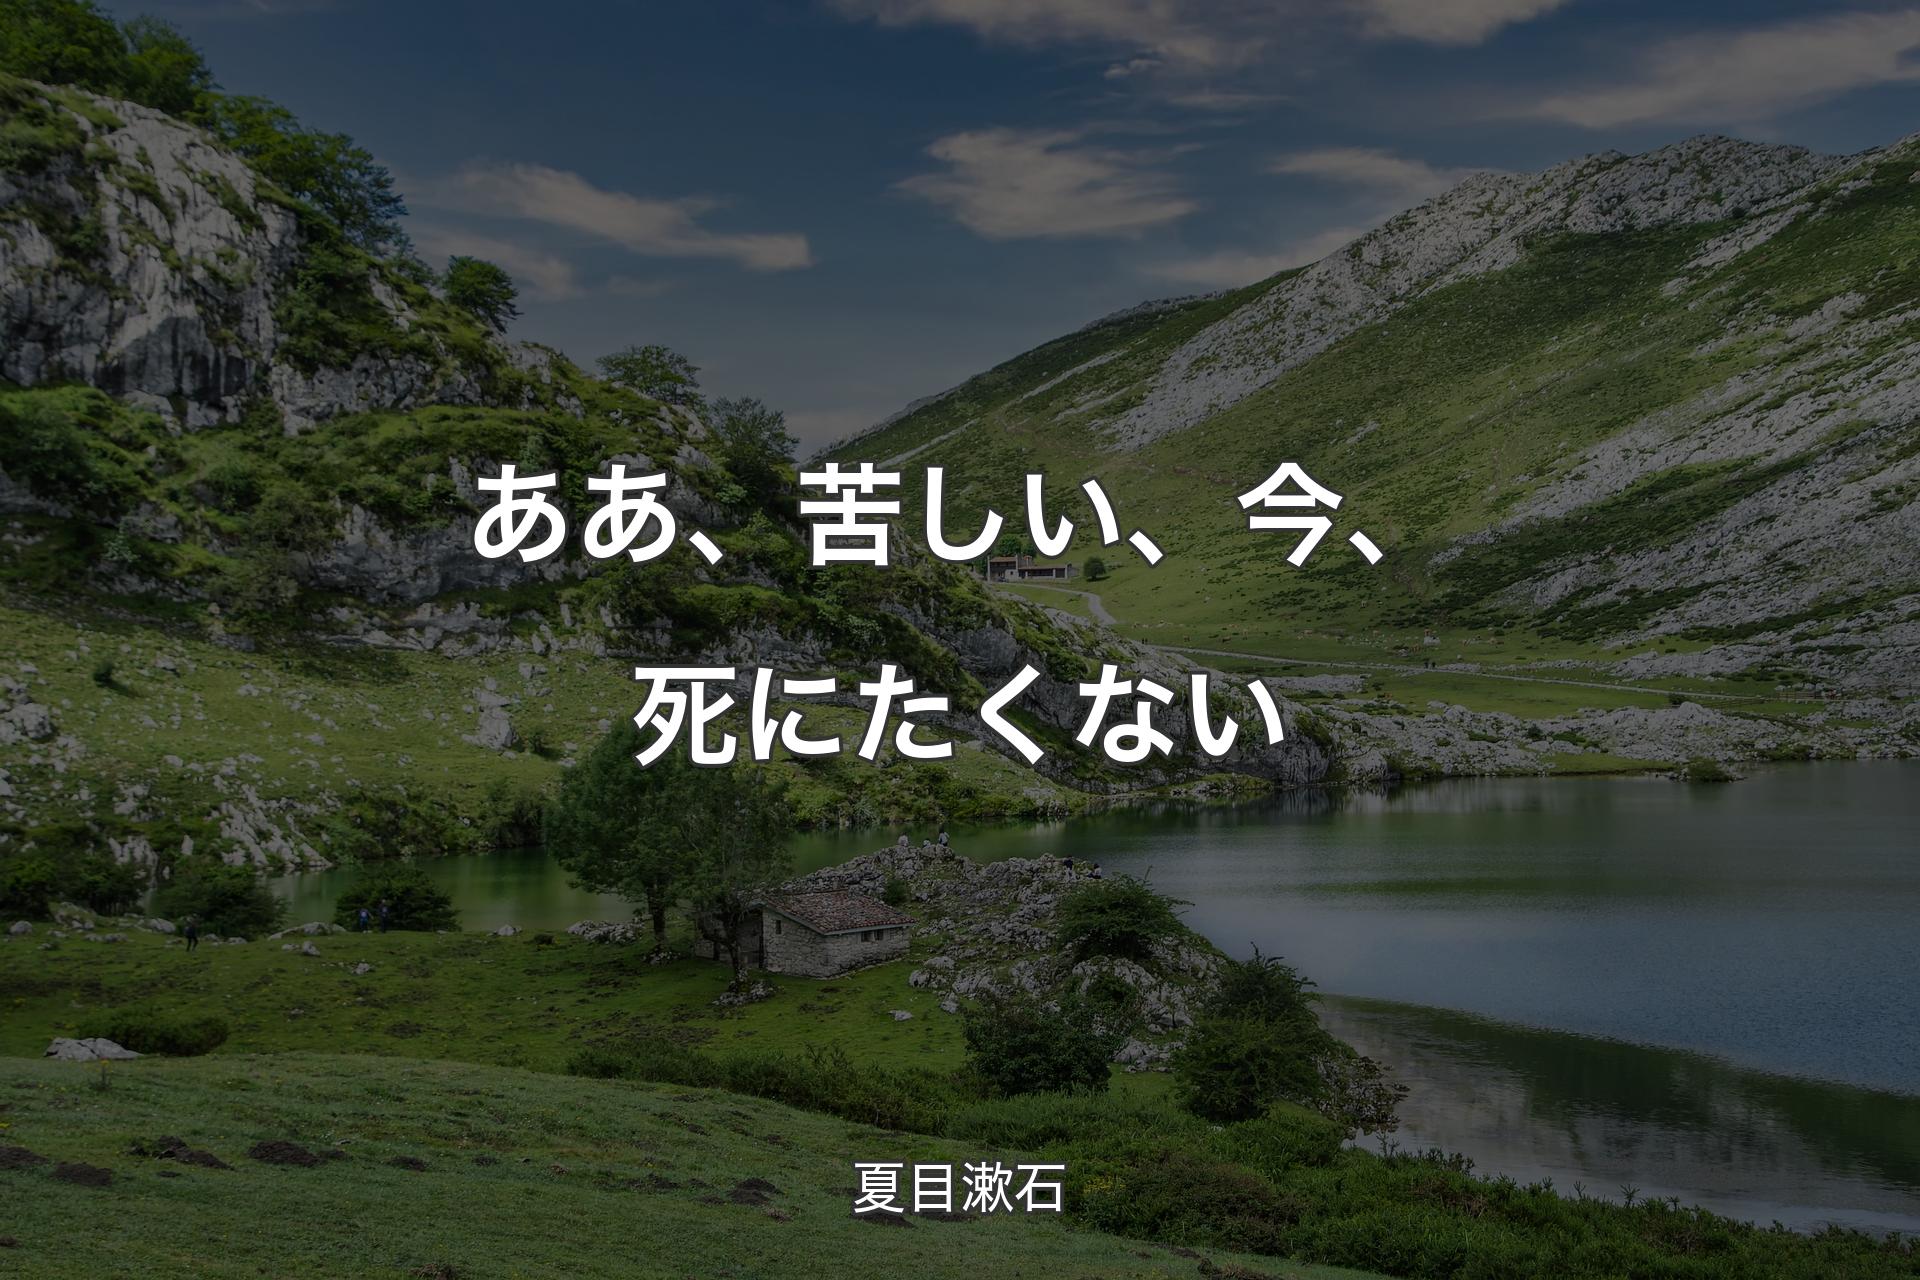 【背景1】ああ、苦しい、今、死にたくない - 夏目漱石